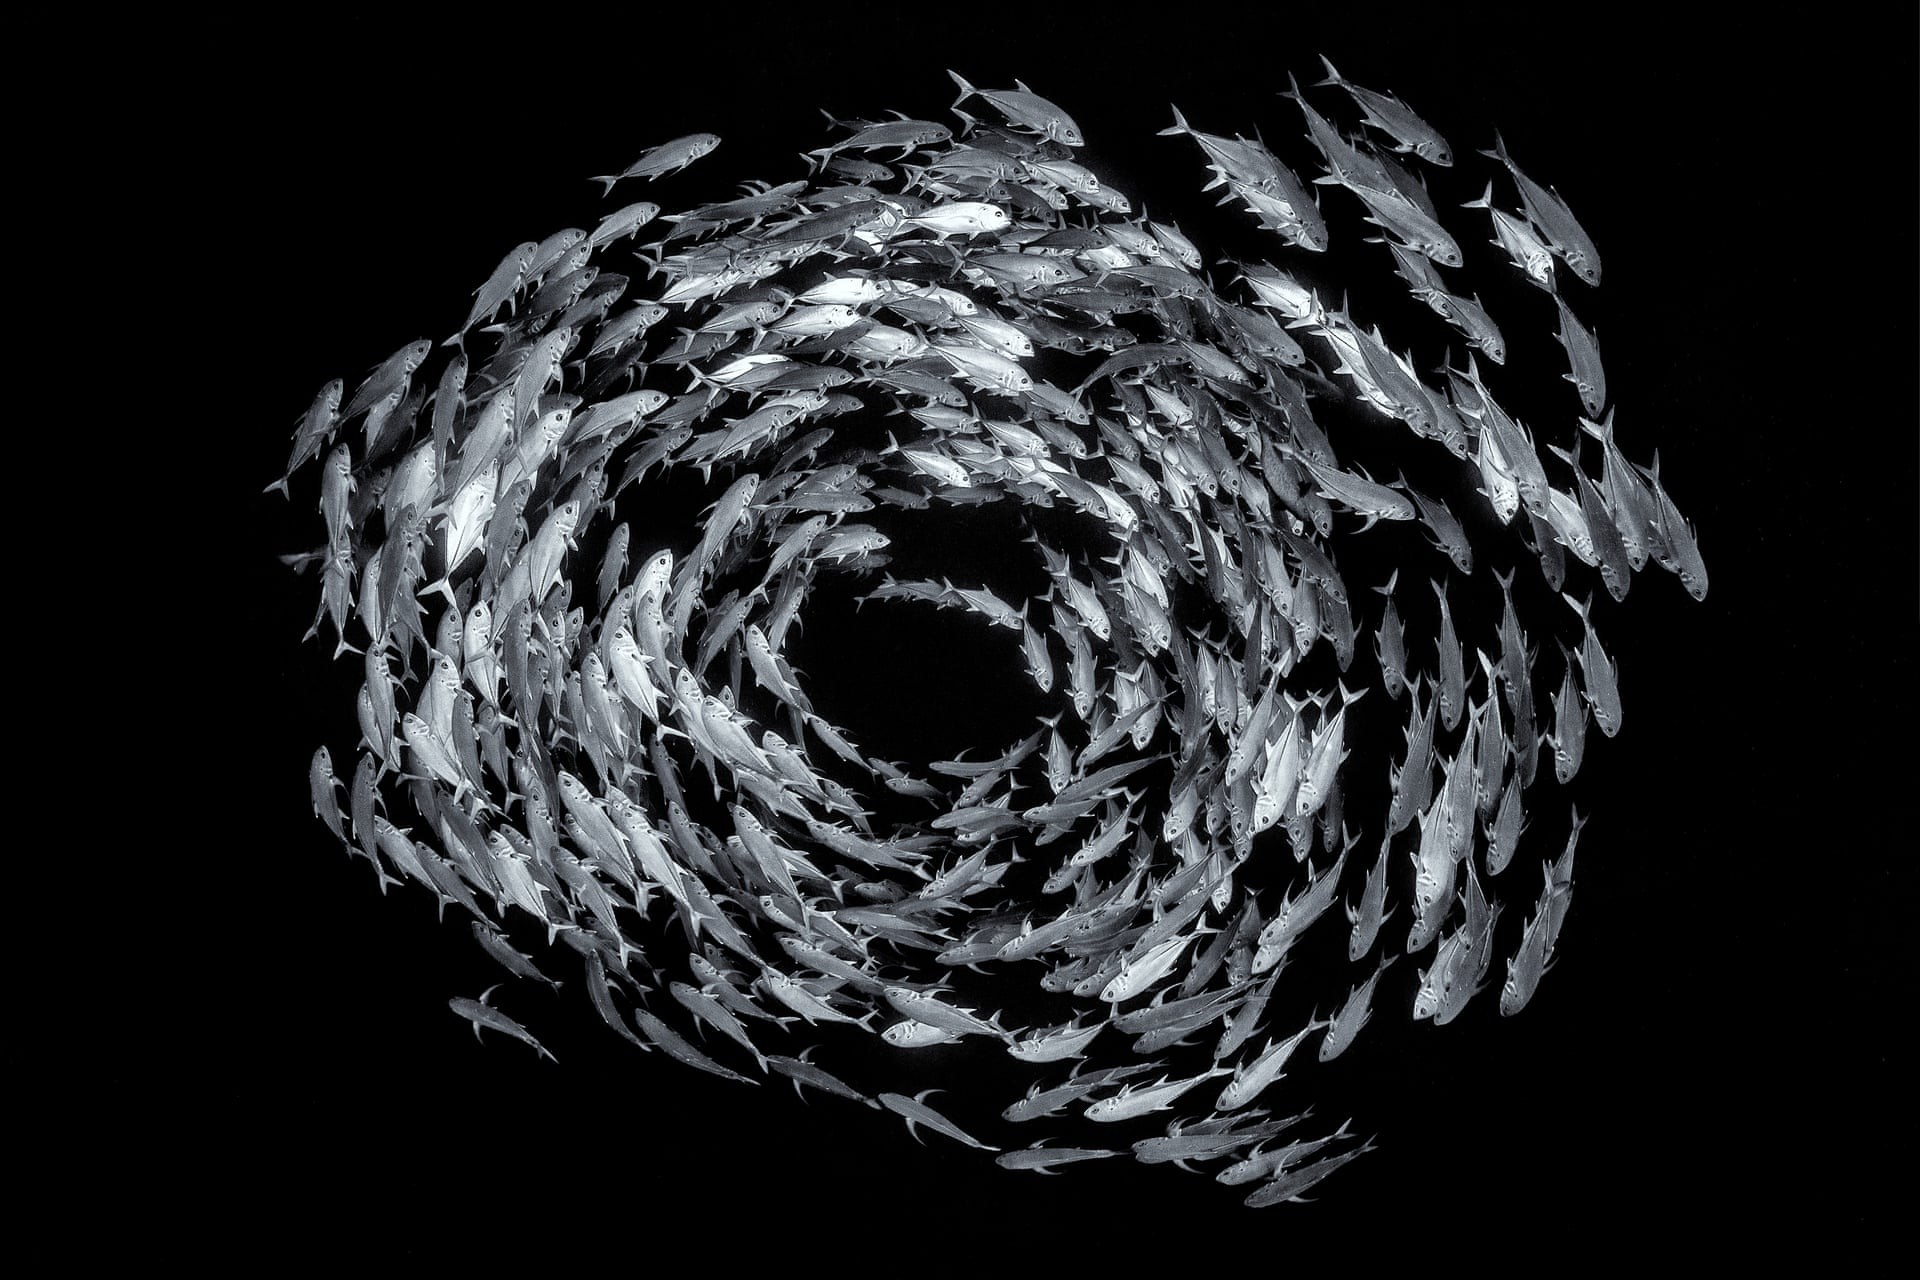 Косяк шестиполосых каранксов в Красном море у Синайского полуострова, Египет - Круговое поведение рыб предшествует спариванию и отпугивает хищников. Автор фото Александр Горчаков